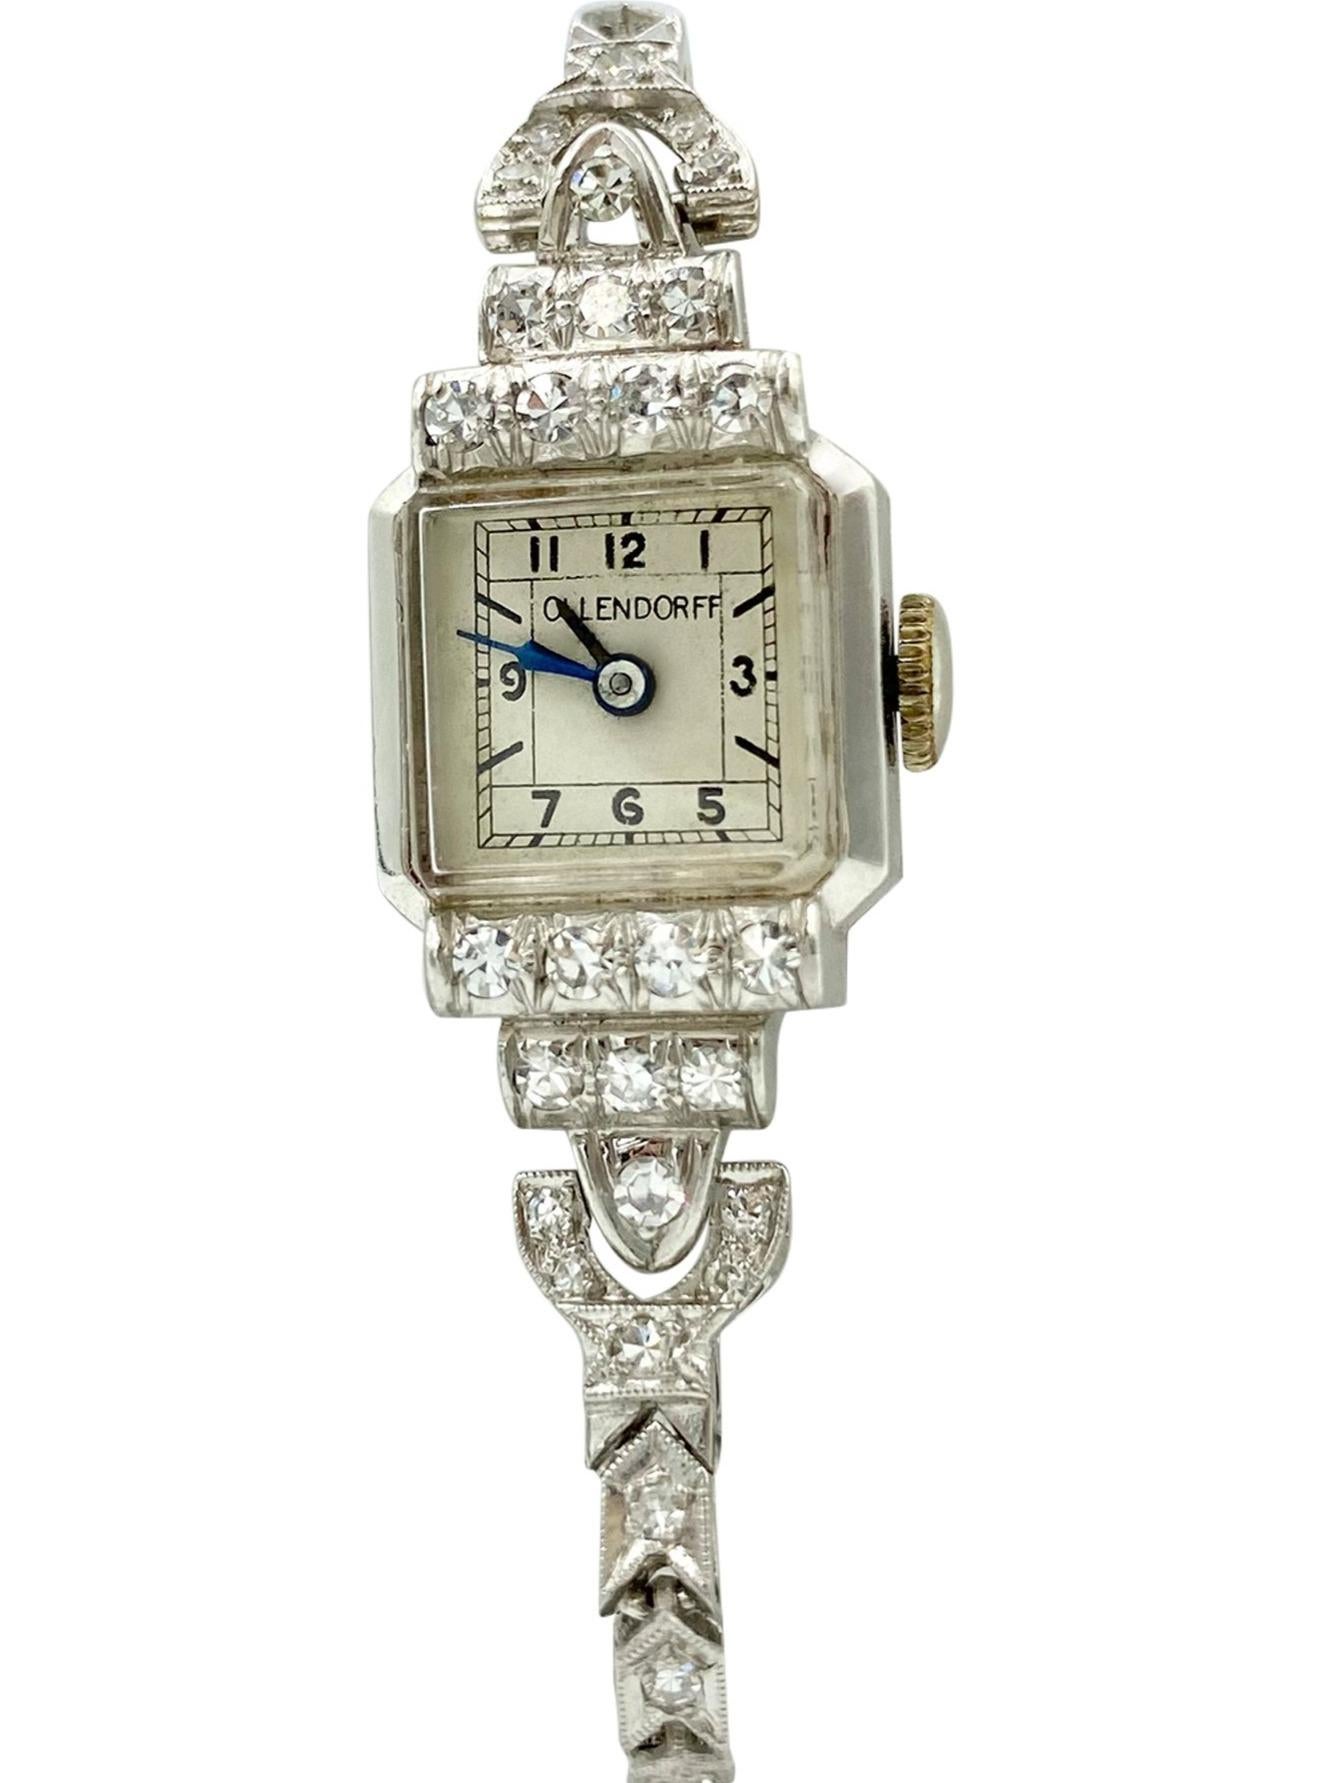 C'est un WOW, WOW... WOW ! !!

Superbe montre-bracelet Art Déco en platine et diamants, de fabrication suisse, à remontage par ressort, signée Ollendorff, datant de la fin des années 1920 ! Il ne s'agit pas seulement d'une montre, mais d'une